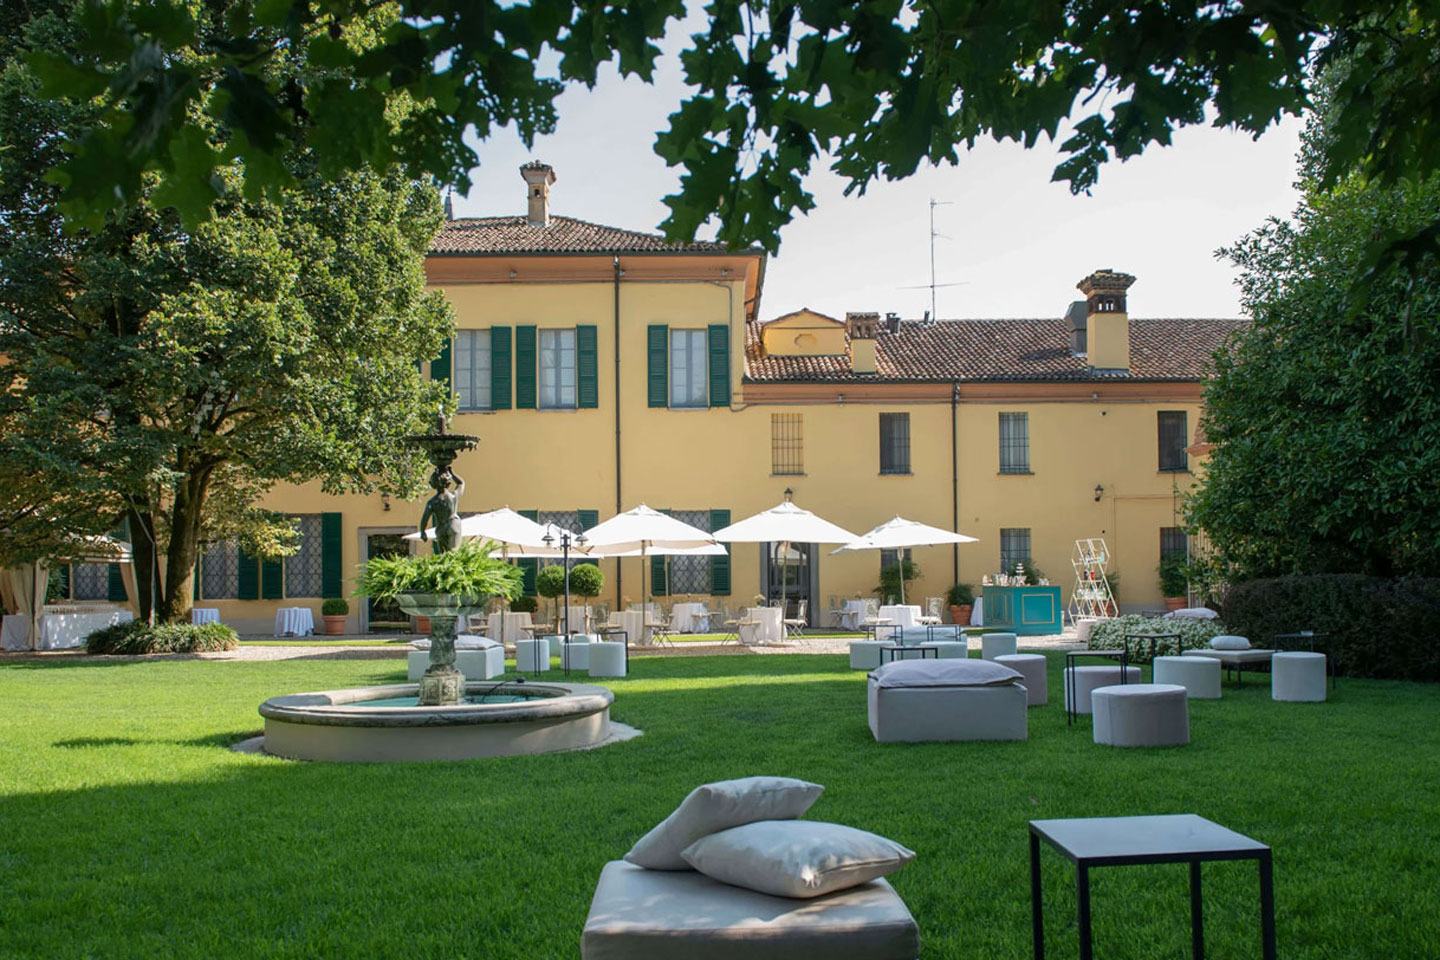 Ricevimento di nozze a Villa Toscanini, location per matrimoni a Ripalta Guerina